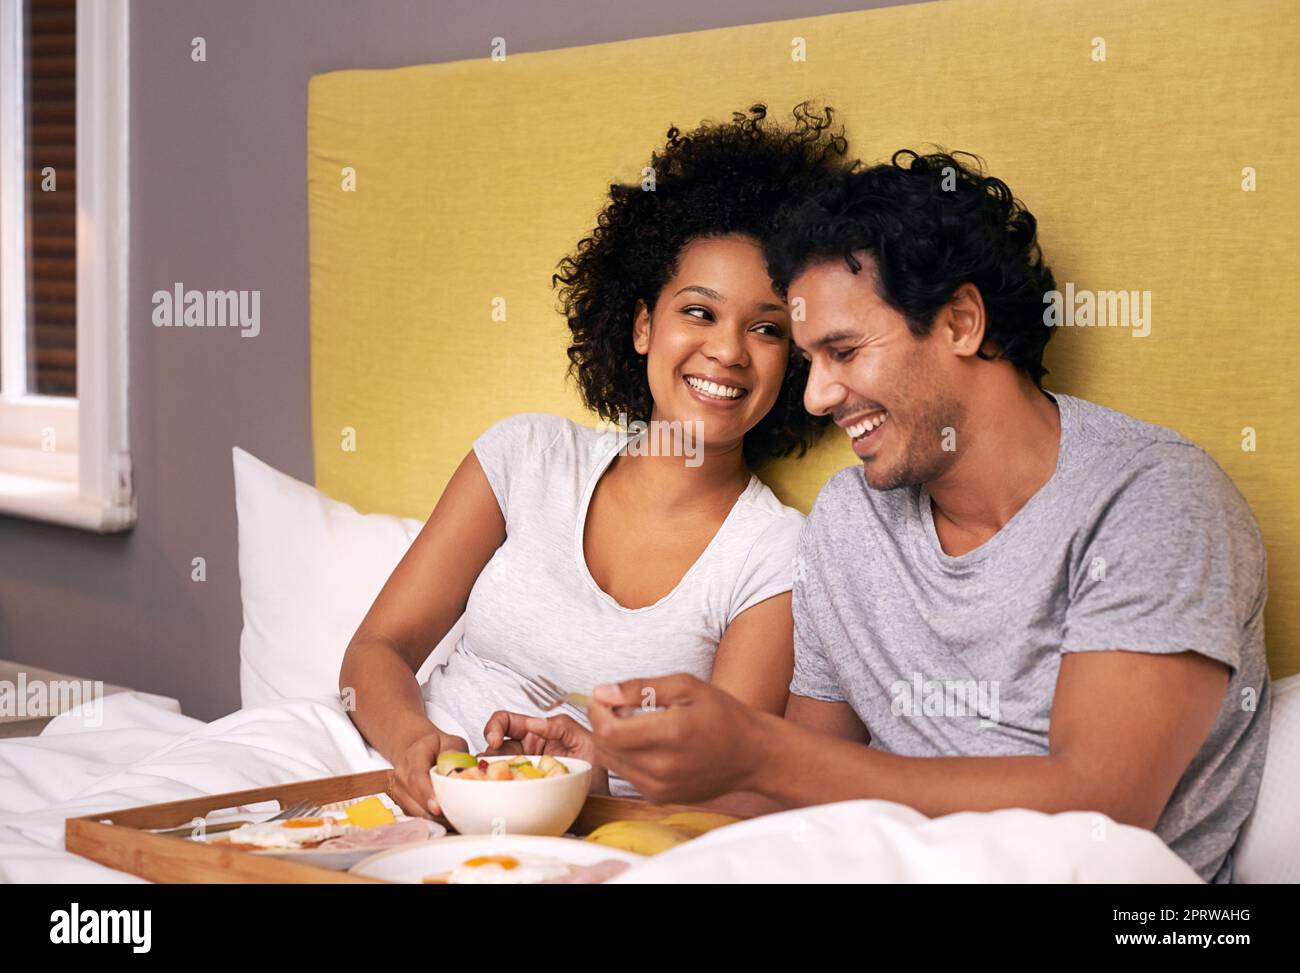 Genießen Sie das Frühstück im Bett. Ein süßes Paar, das sich das Frühstück im Bett teilt. Stockfoto